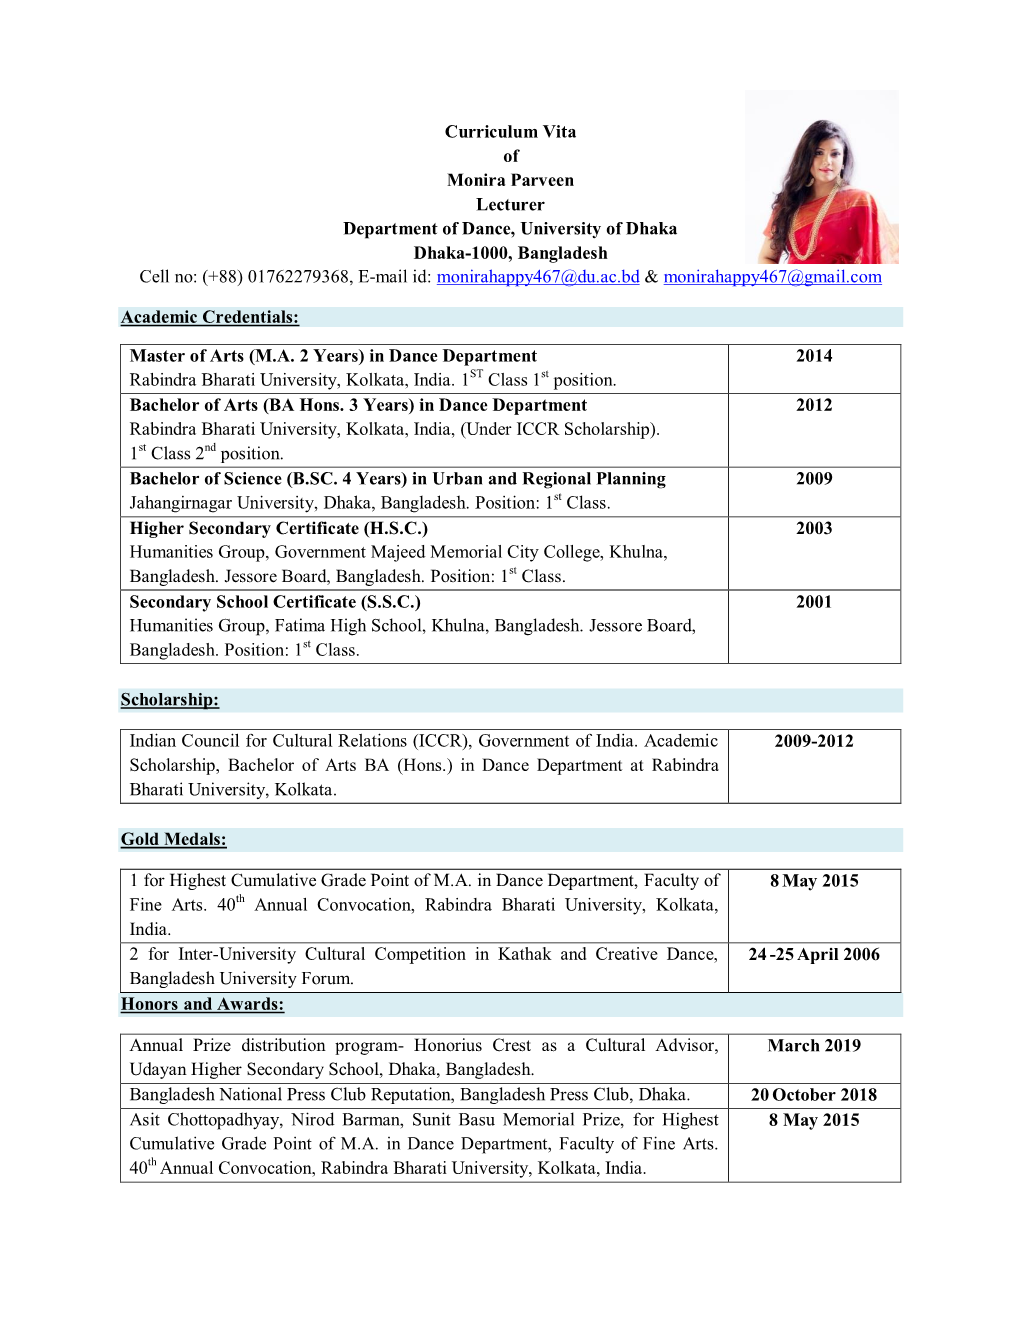 Curriculum Vita of Monira Parveen Lecturer Department of Dance